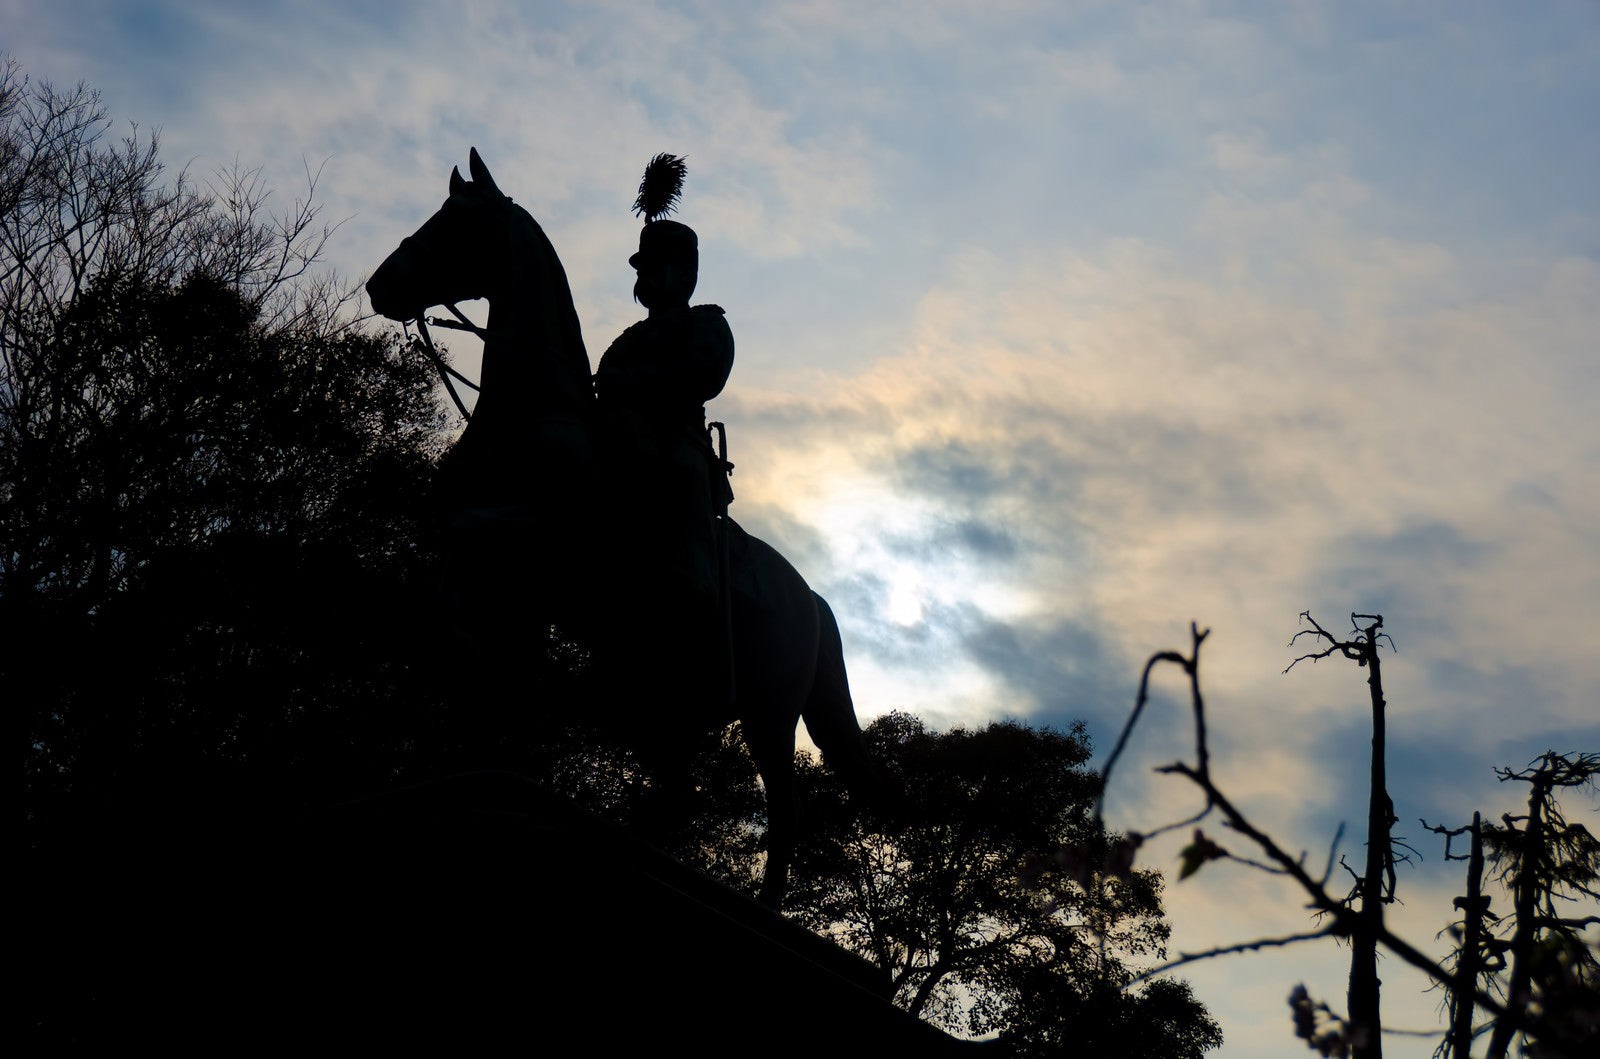 「上野公園 小松宮彰仁親王銅像」の写真